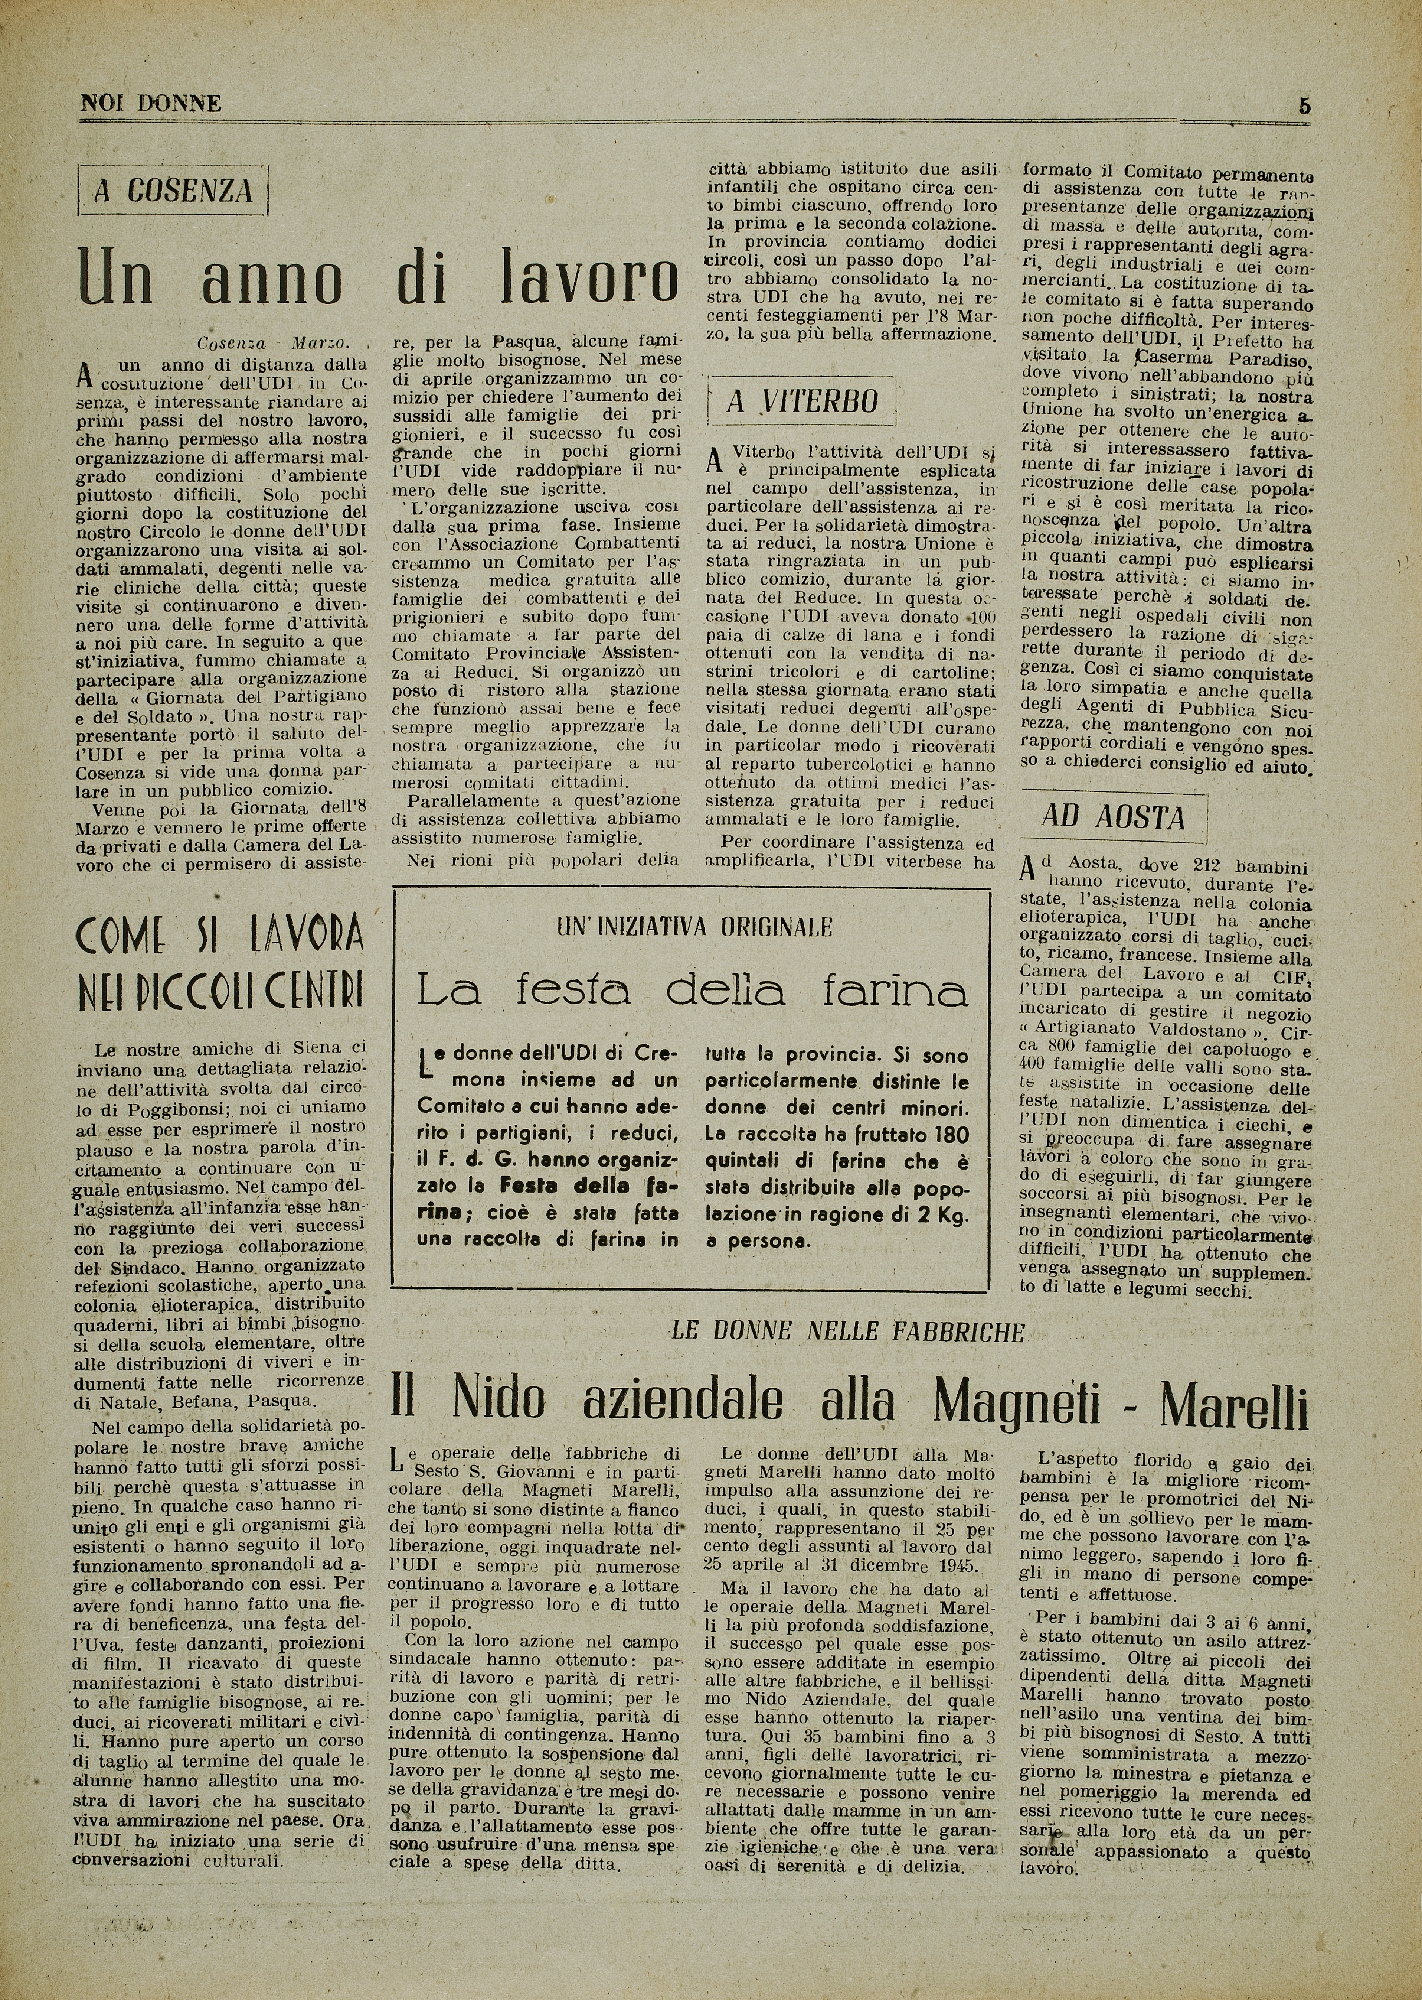 Foto: Un piano di lavoro per la ricostruzione dell’Italia dopo la guerra: lavoro, diritti, educazione.